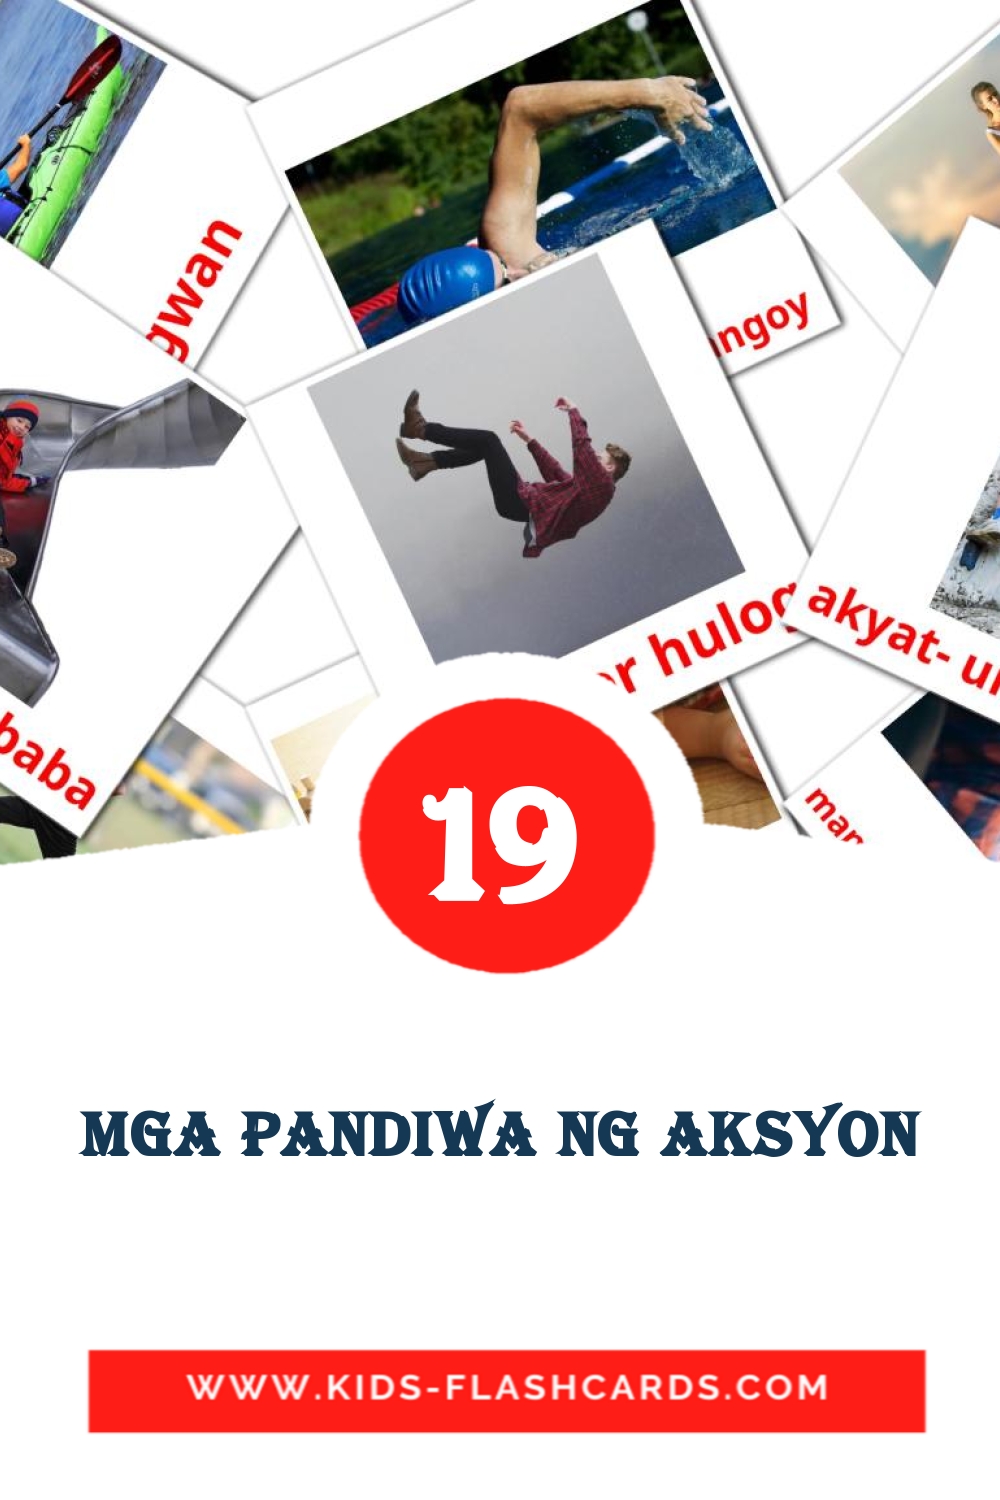 19 tarjetas didacticas de Mga pandiwa ng aksyon para el jardín de infancia en filipino